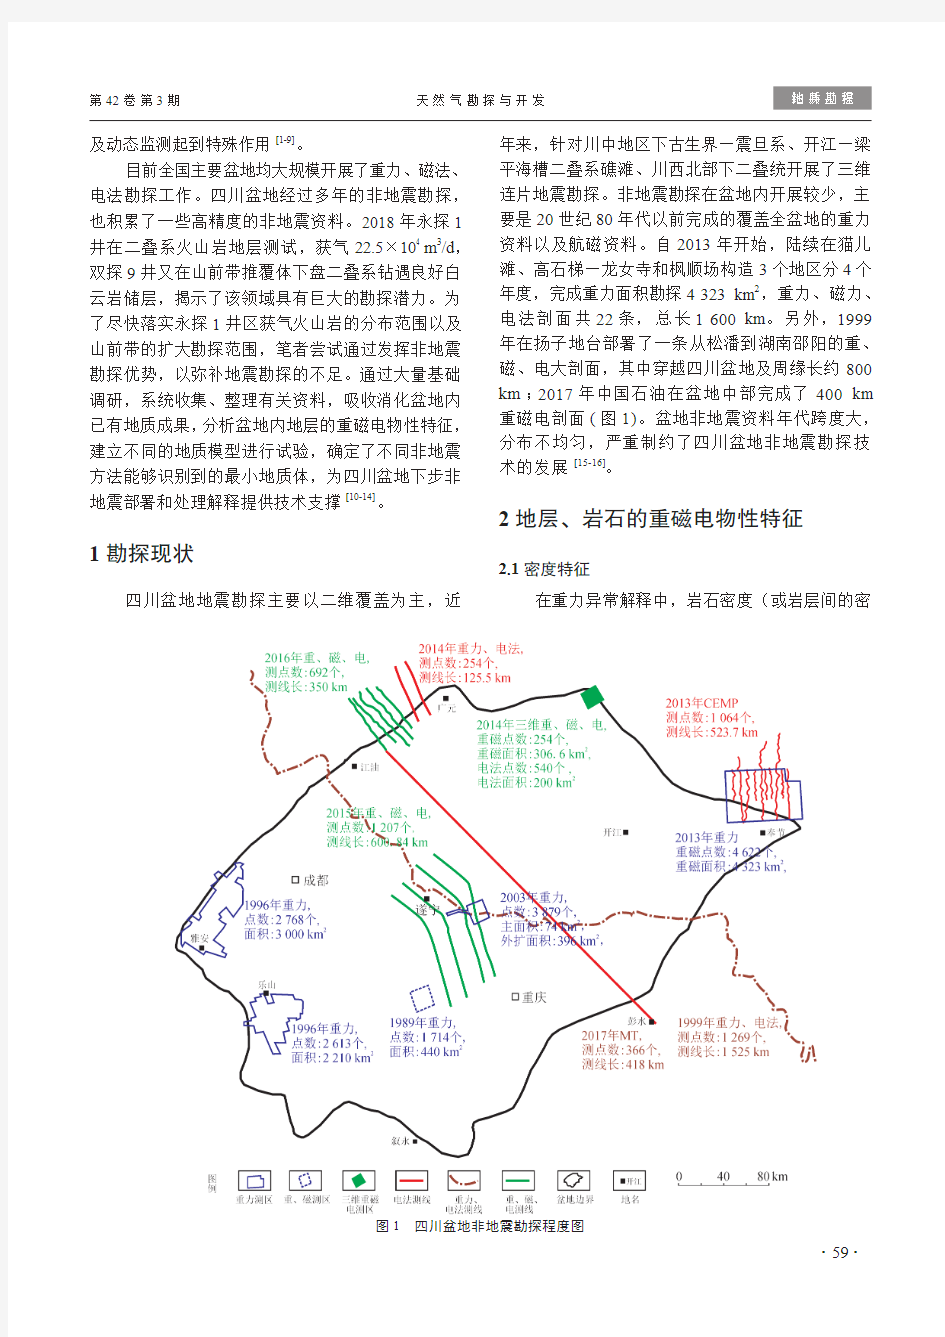 非地震勘探在四川盆地的应用前景